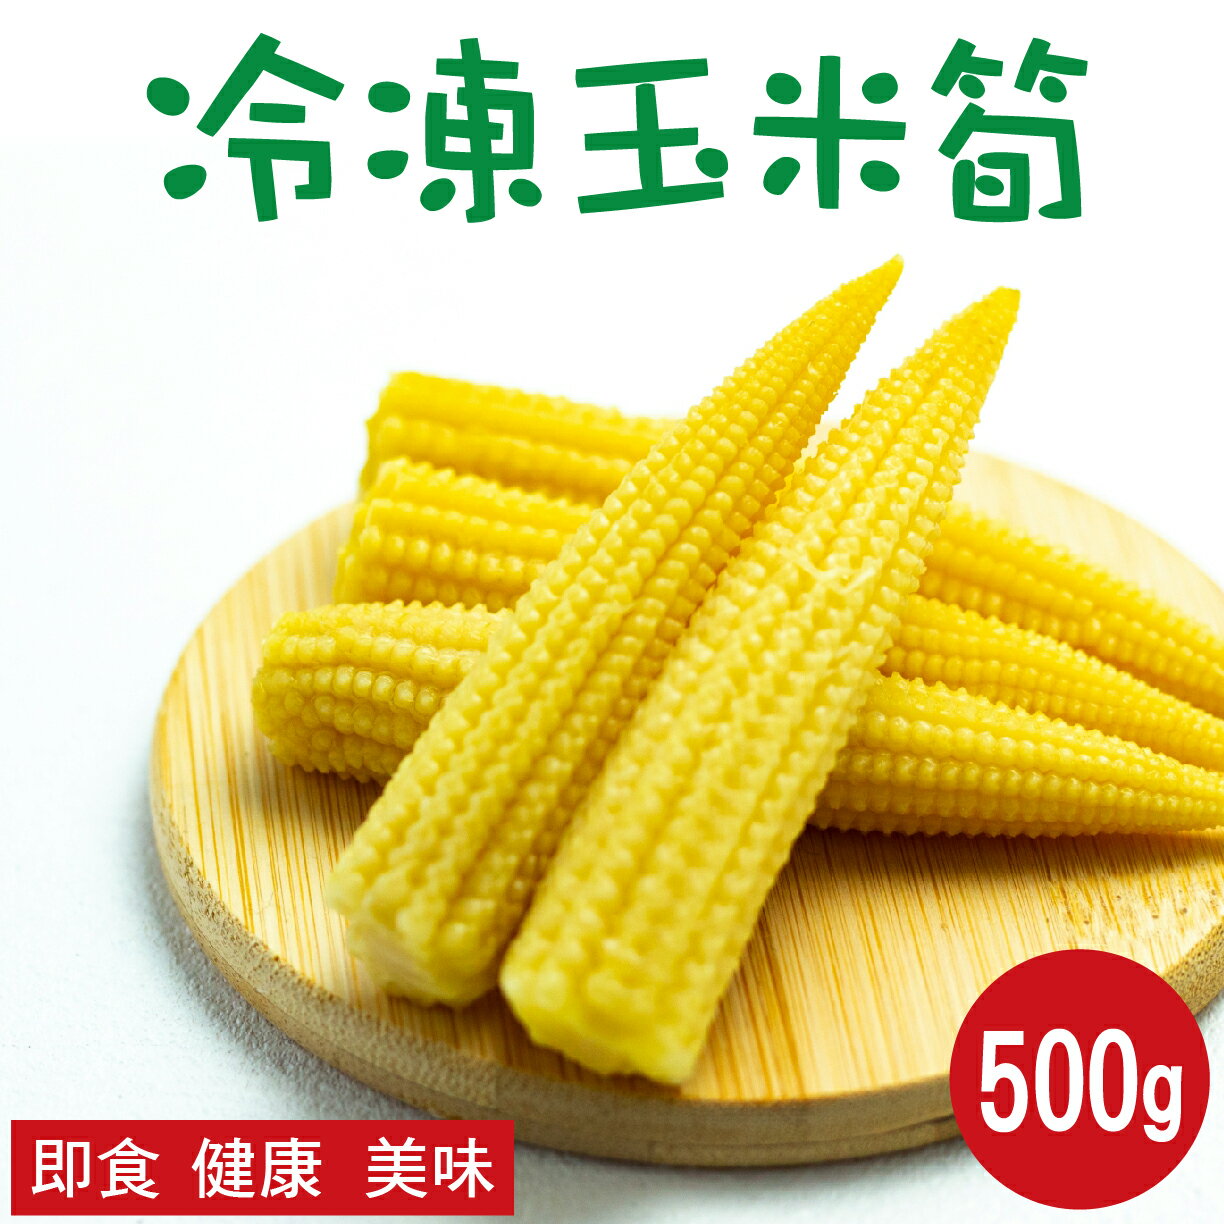 【田食原】新鮮冷凍玉米筍 500g 低卡蔬菜